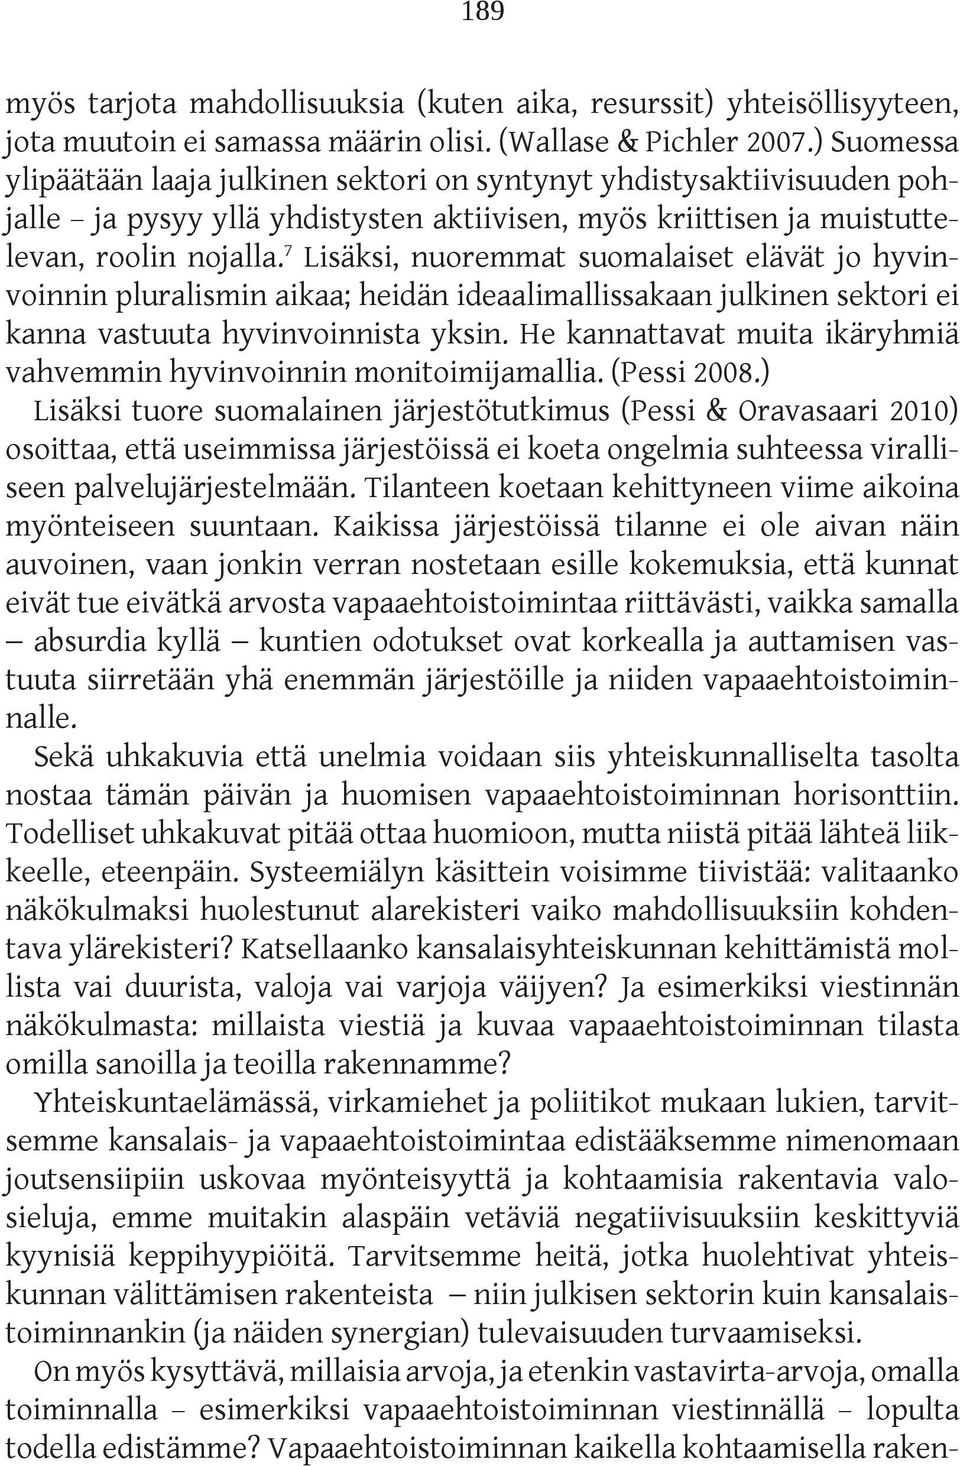 7 Lisäksi, nuoremmat suomalaiset elävät jo hyvinvoinnin pluralismin aikaa; heidän ideaalimallissakaan julkinen sektori ei kanna vastuuta hyvinvoinnista yksin.